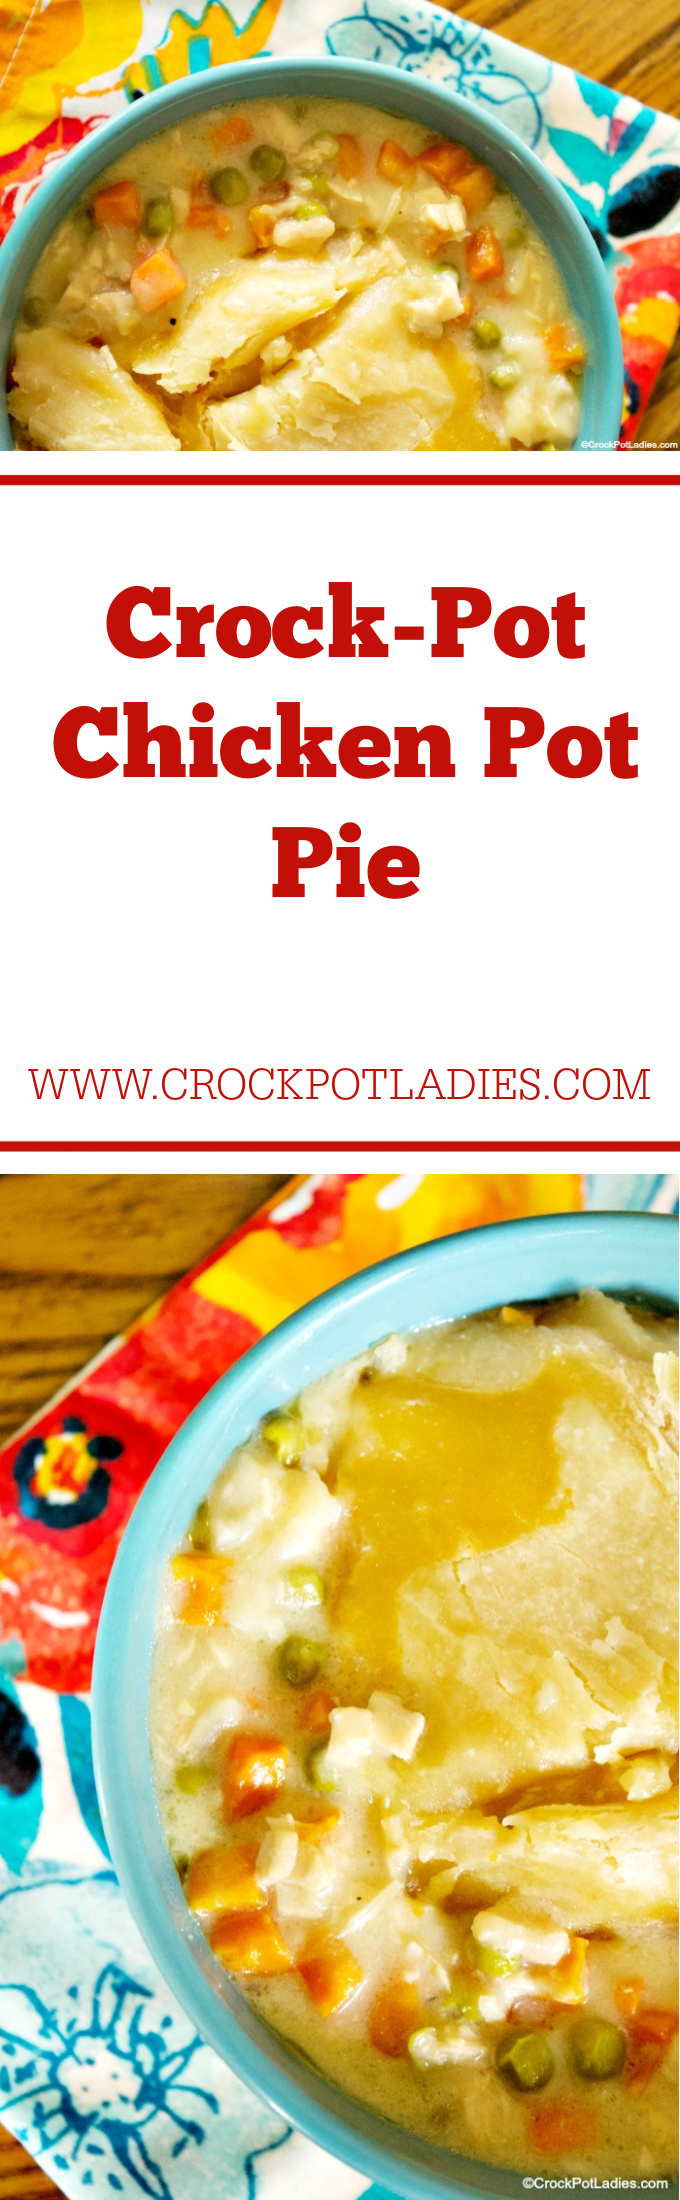 Crock-Pot Chicken Pot Pie